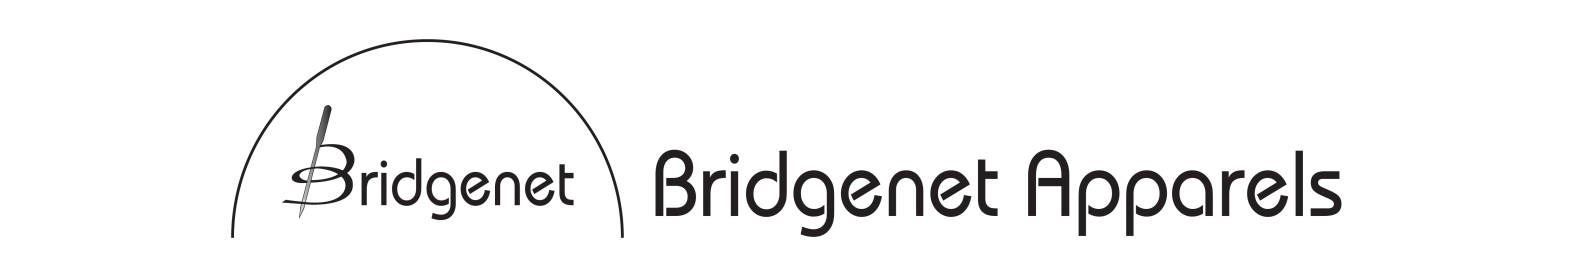 Bridgent apparels